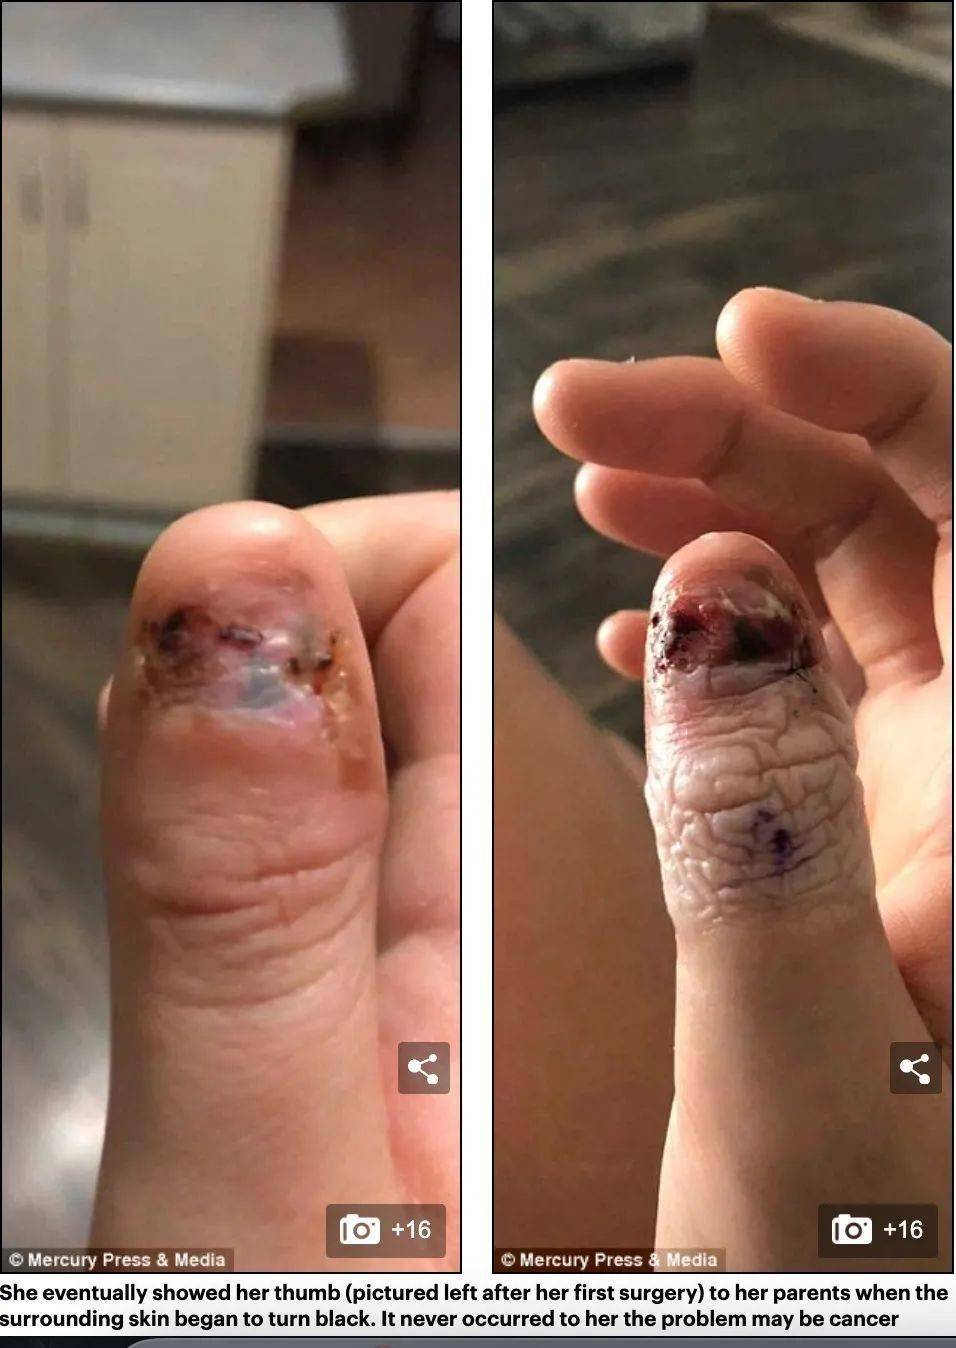 警戒澳洲姑娘酷爱咬指甲结果咬出癌症被迫截肢这事别干了